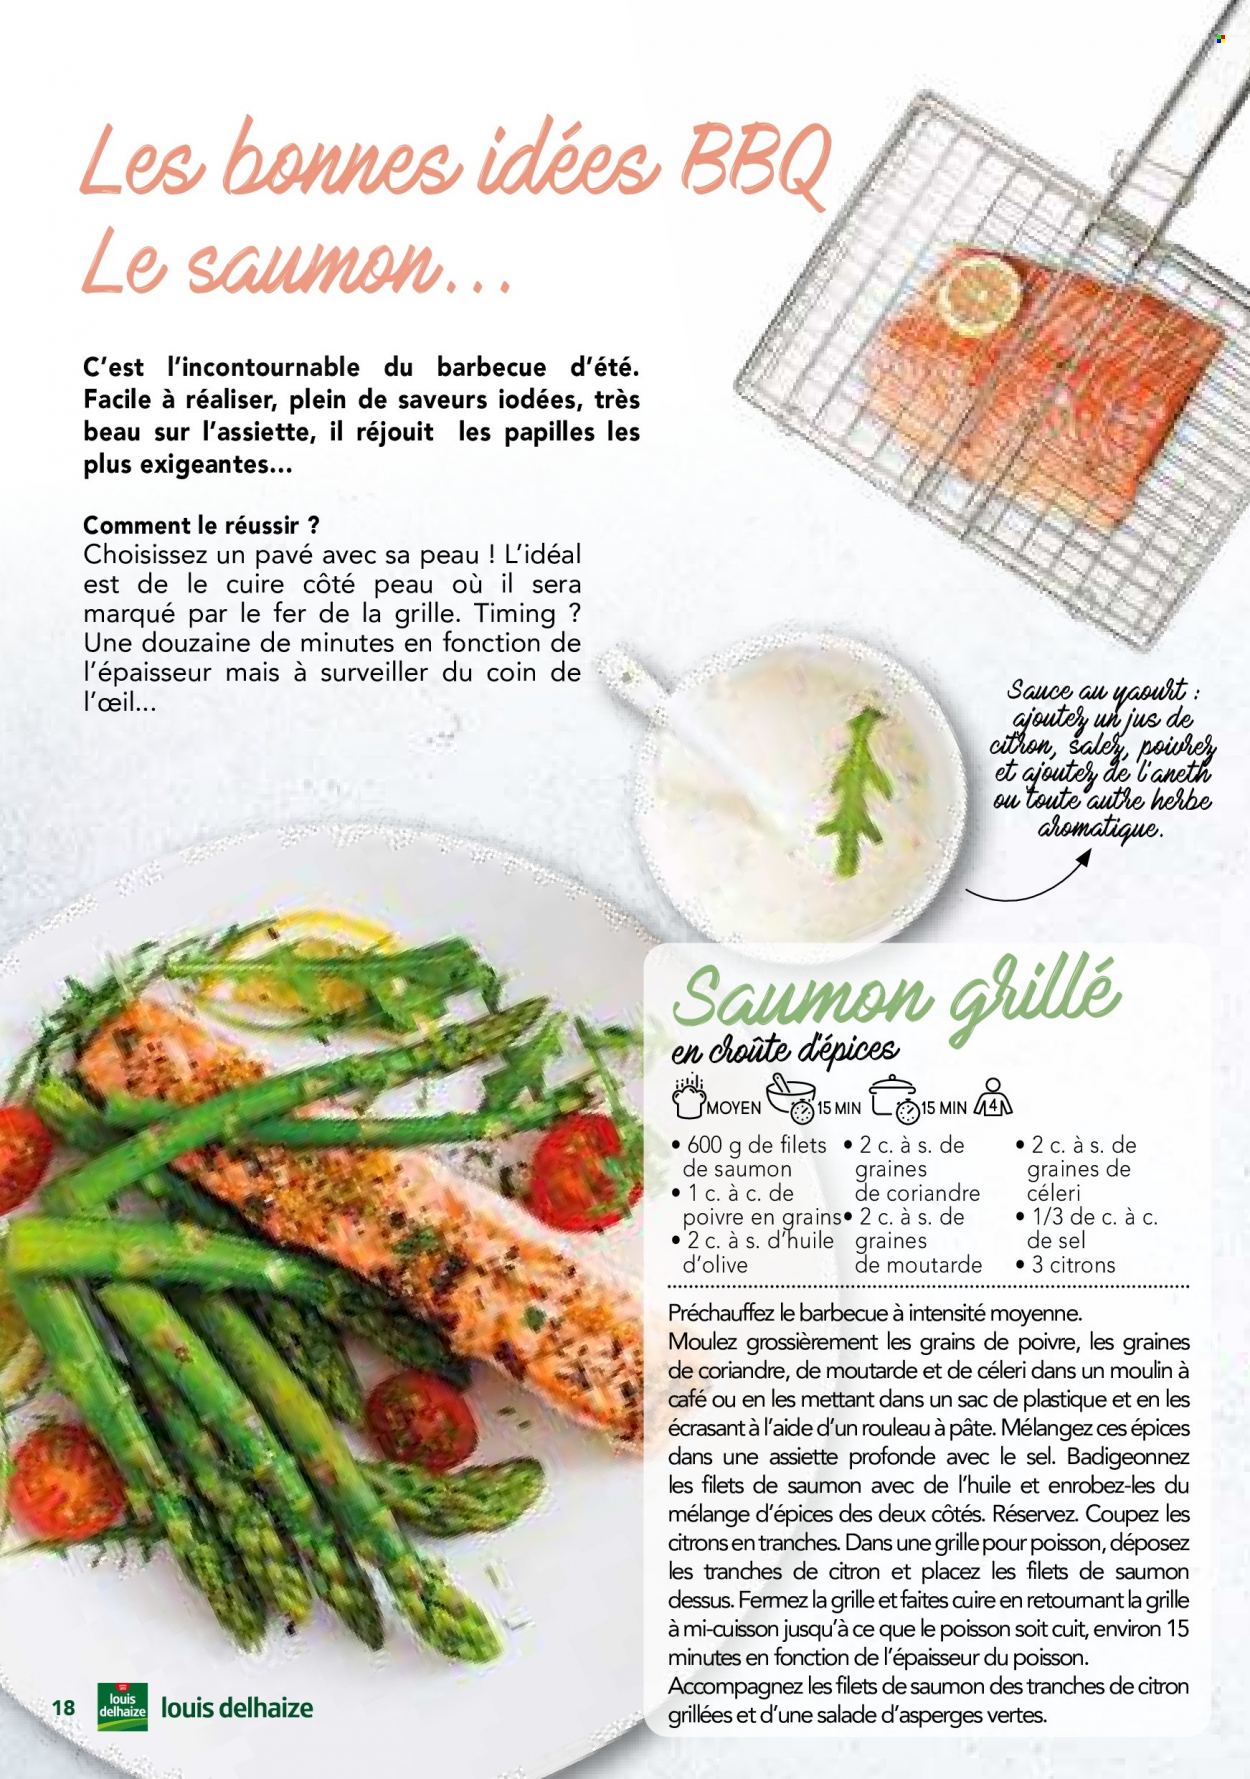 thumbnail - Catalogue Louis Delhaize - Produits soldés - salade, aubergine, courgette, oignons, champignon, filet de poulet, viande de poulet, viande de canard, yaourt, bouillon, tomates séchées. Page 18.